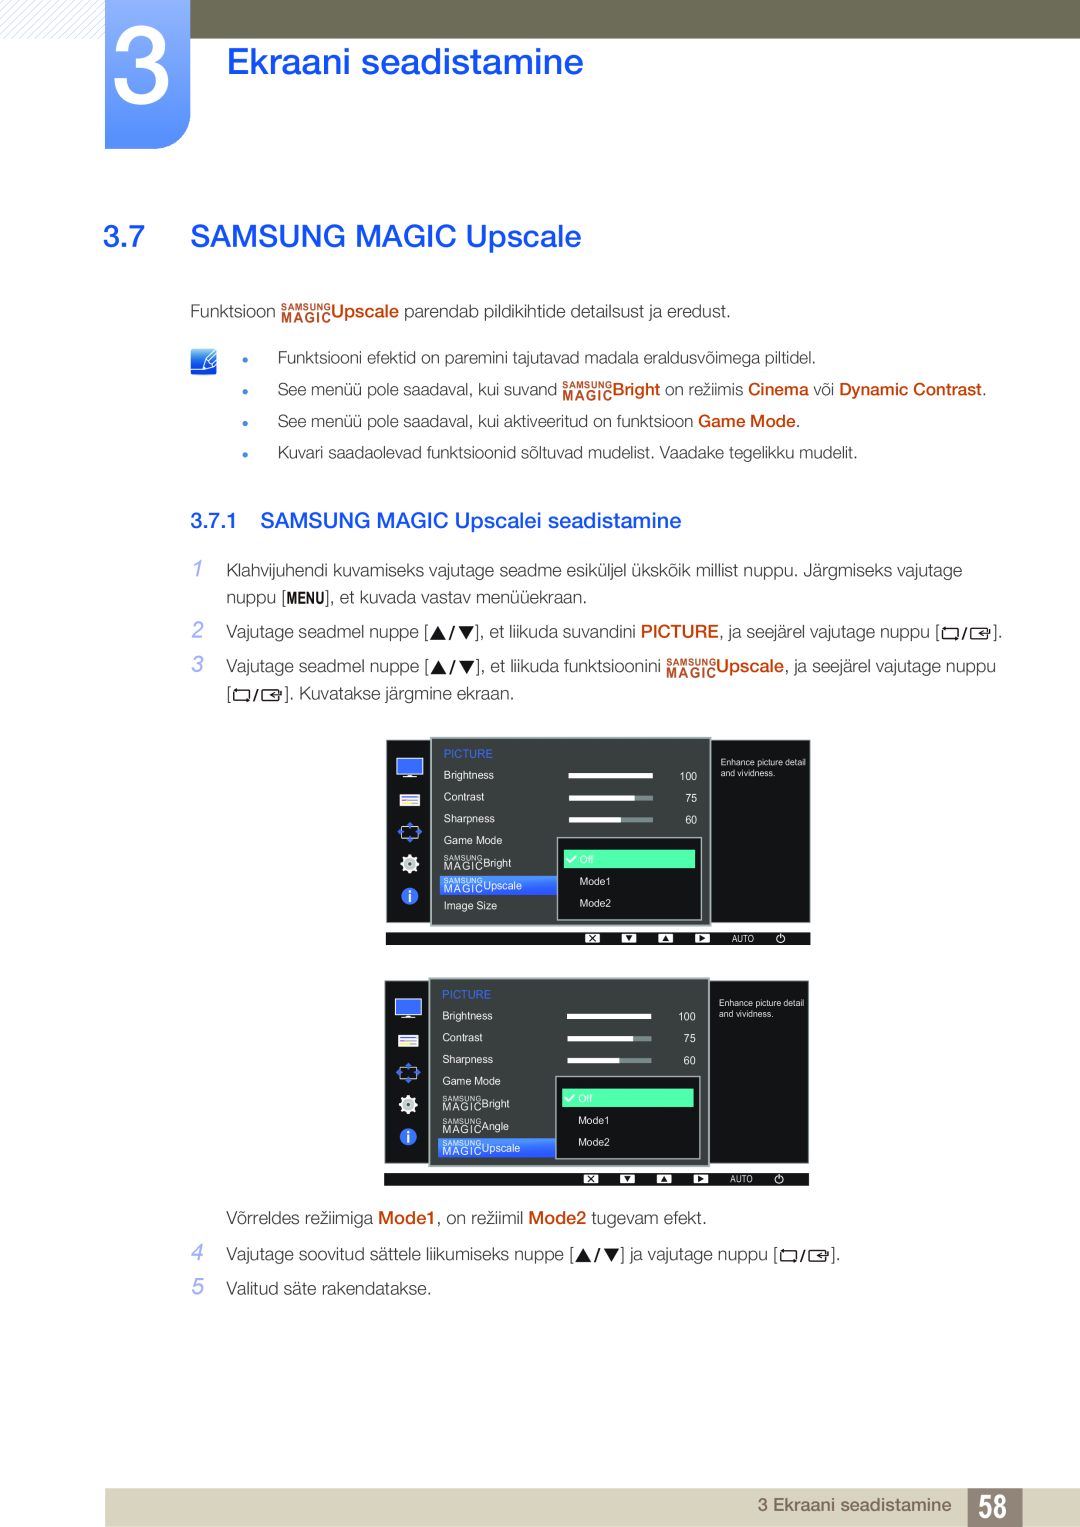 Samsung LS22D300NY/EN, LS24D340HSX/EN, LS24D300HS/EN manual SAMSUNG MAGIC Upscalei seadistamine, Ekraani seadistamine 